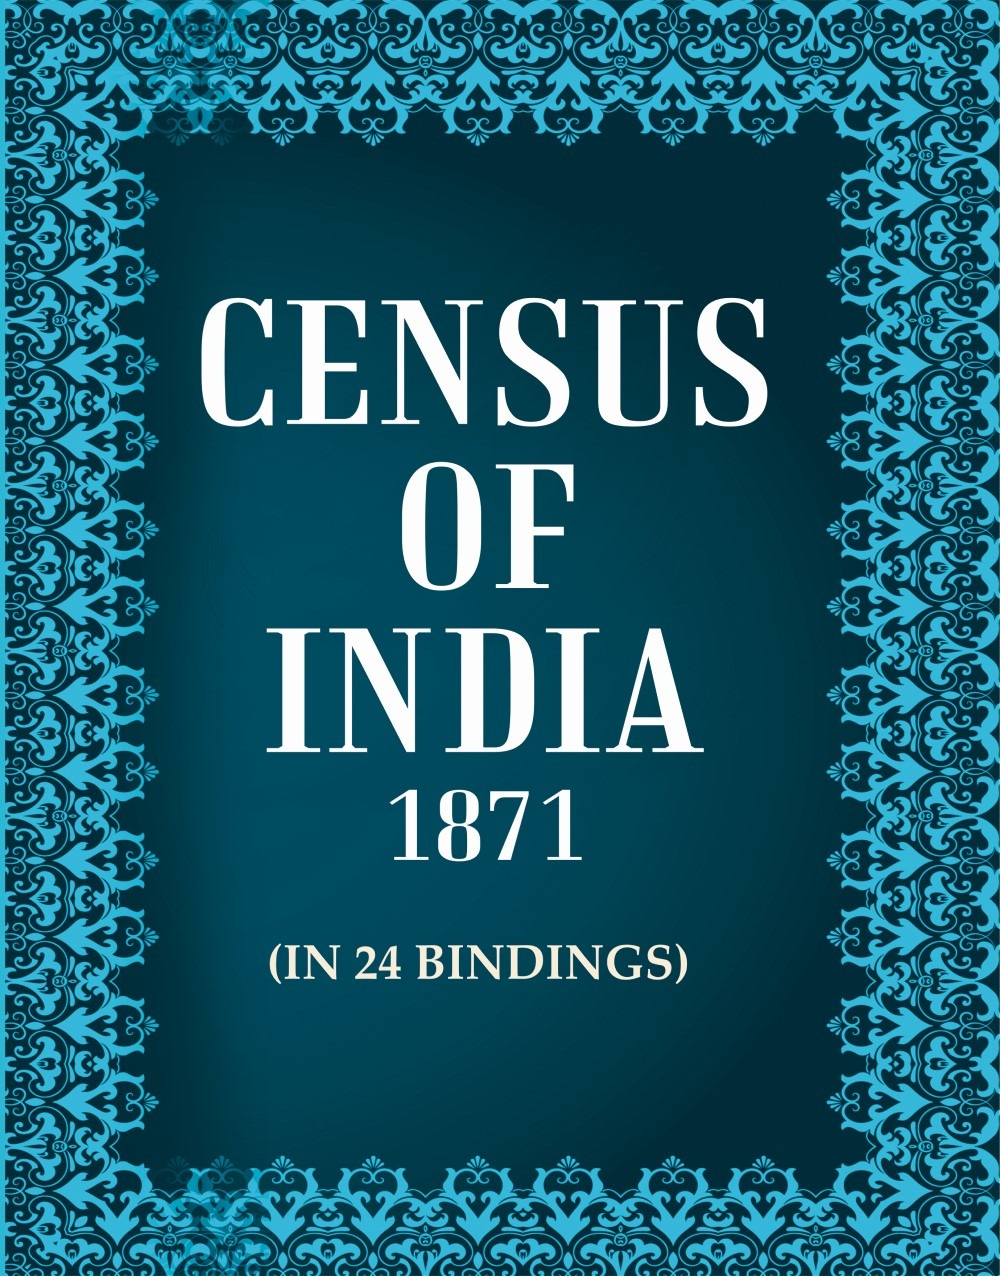 Census of India 1871 In 24 Bindings In 24 Bindings In 24 Bindings In 24 Bindings In 24 Bindings In 24 Bindings In 24 Bindings In 24 Bindings In 24 Bindings In 24 Bindings In 24 Bindings In 24 Bindings In 24 Bindings In 24 Bindings In 24 Bindings In 24 Bindings In 24 Bindings In 24 Bindings In 24 Bindings In 24 Bindings In 24 Bindings In 24 Bindings In 24 Bindings In 24 Bindings In 24 Bindings In 24 Bindings In 24 Bindings In 24 Bindings In 24 Bindings In 24 Bindings In 24 Bindings In 24 Bindings In 24 Bindings In 24 Bindings In 24 Bindings In 24 Bindings In 24 Bindings In 24 Bindings